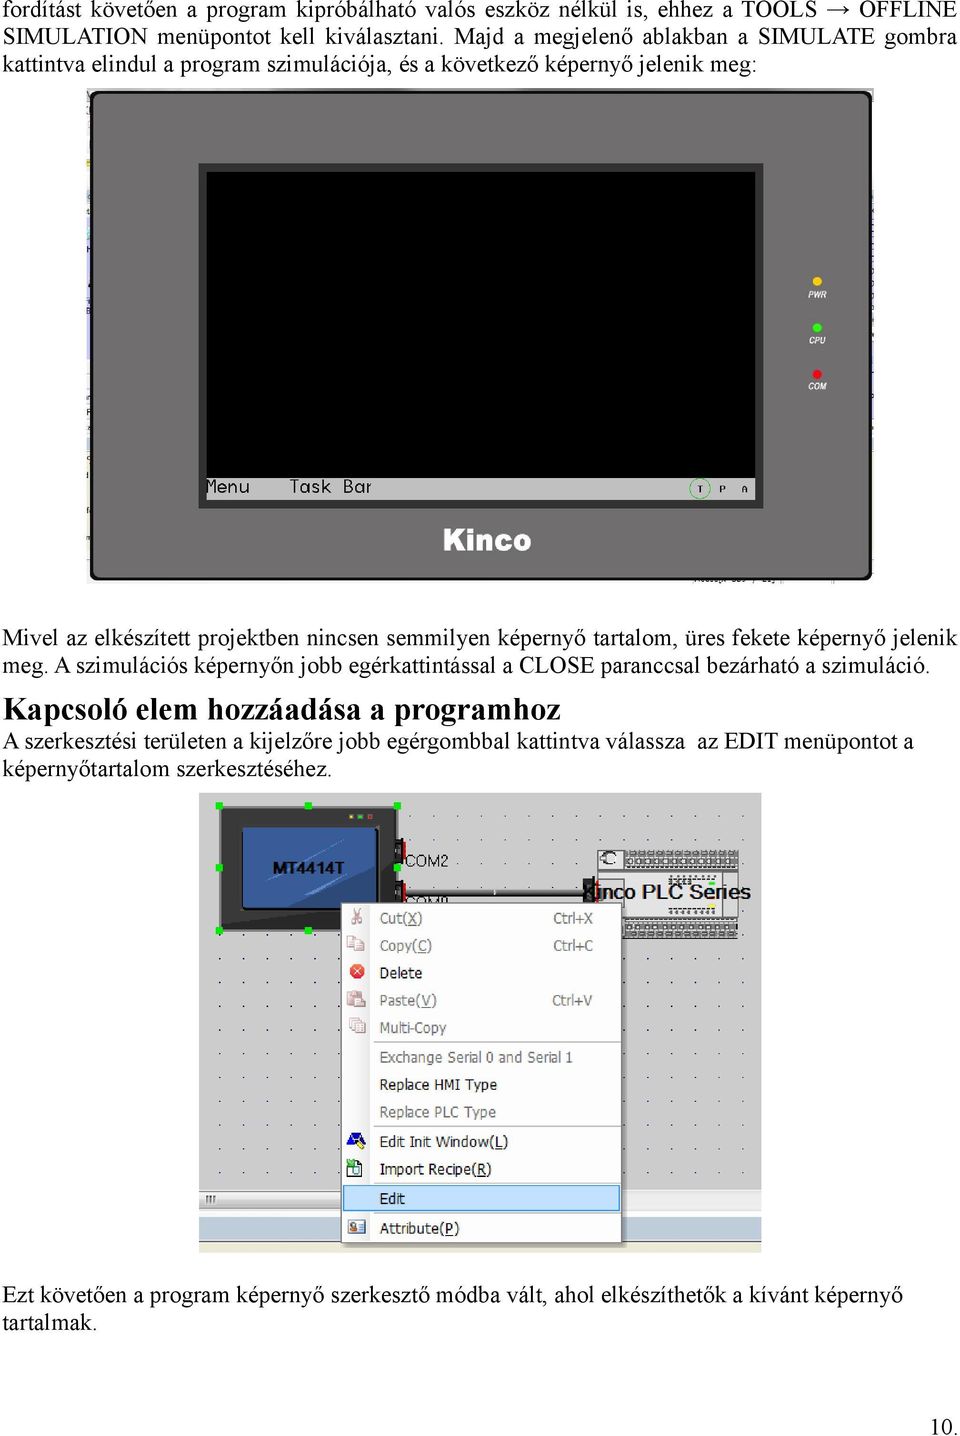 képernyő tartalom, üres fekete képernyő jelenik meg. A szimulációs képernyőn jobb egérkattintással a CLOSE paranccsal bezárható a szimuláció.